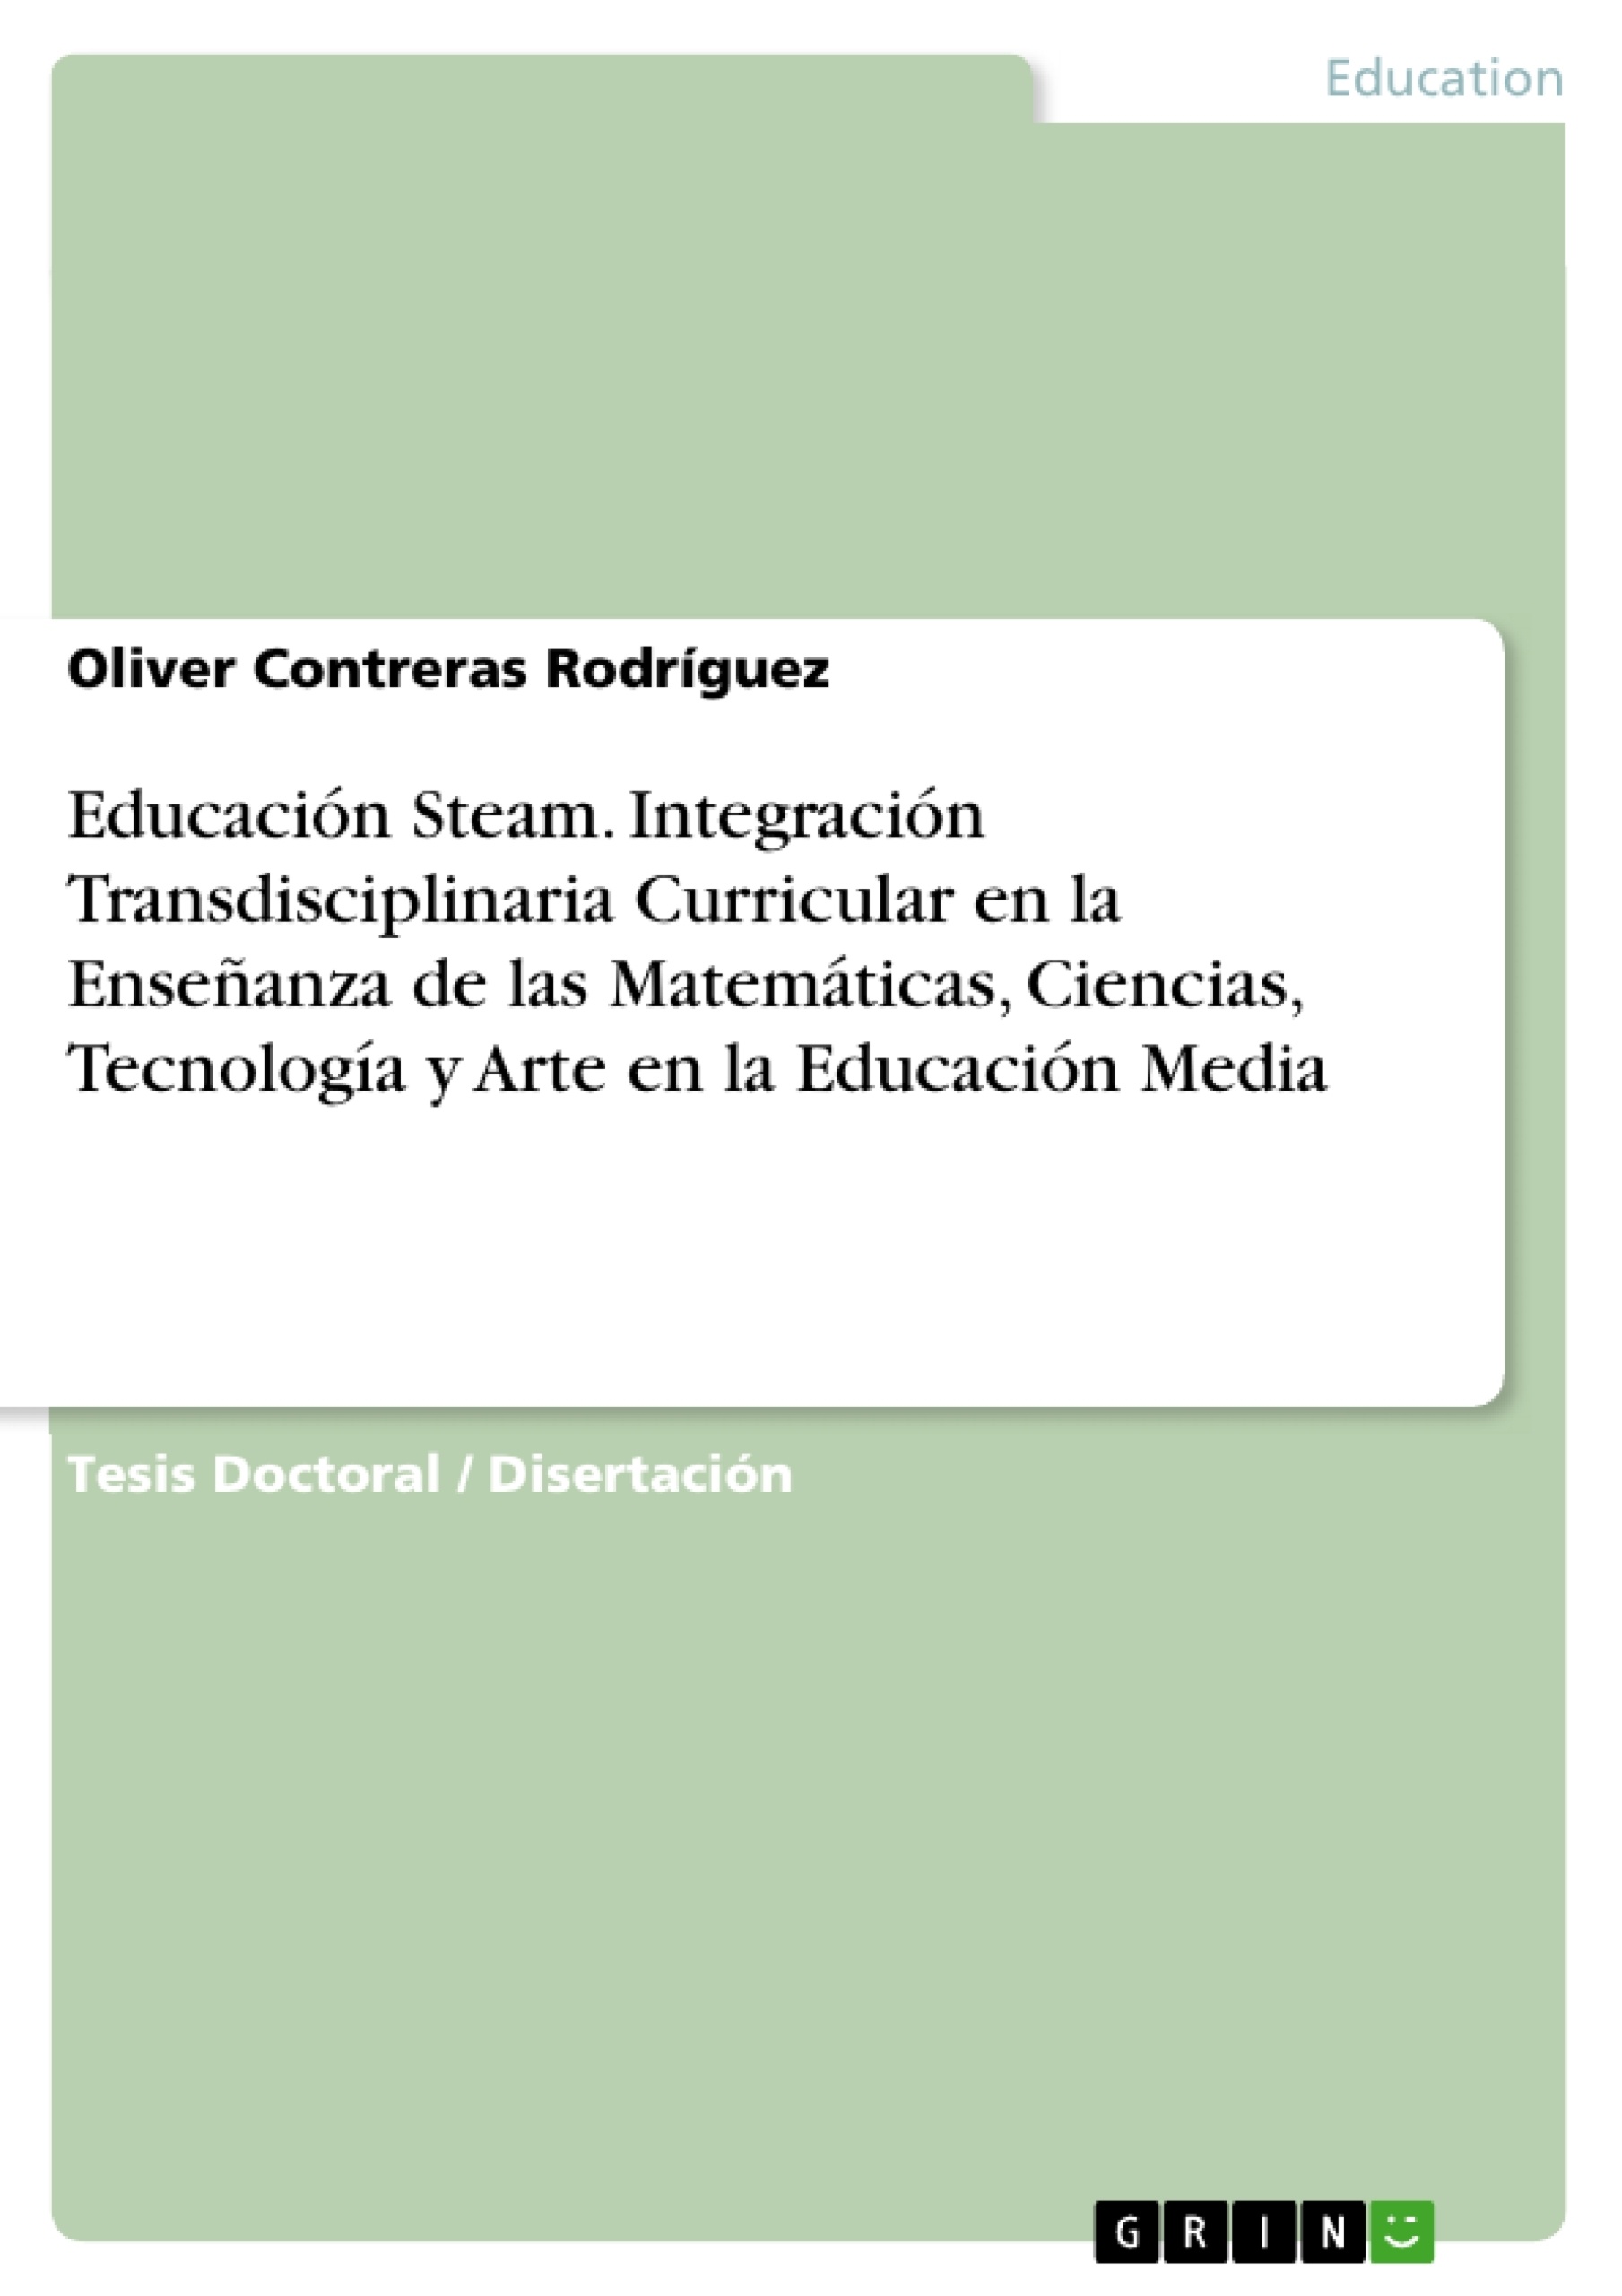 Título: Educación Steam. Integración Transdisciplinaria Curricular en la Enseñanza de las Matemáticas, Ciencias, Tecnología y Arte en la Educación Media